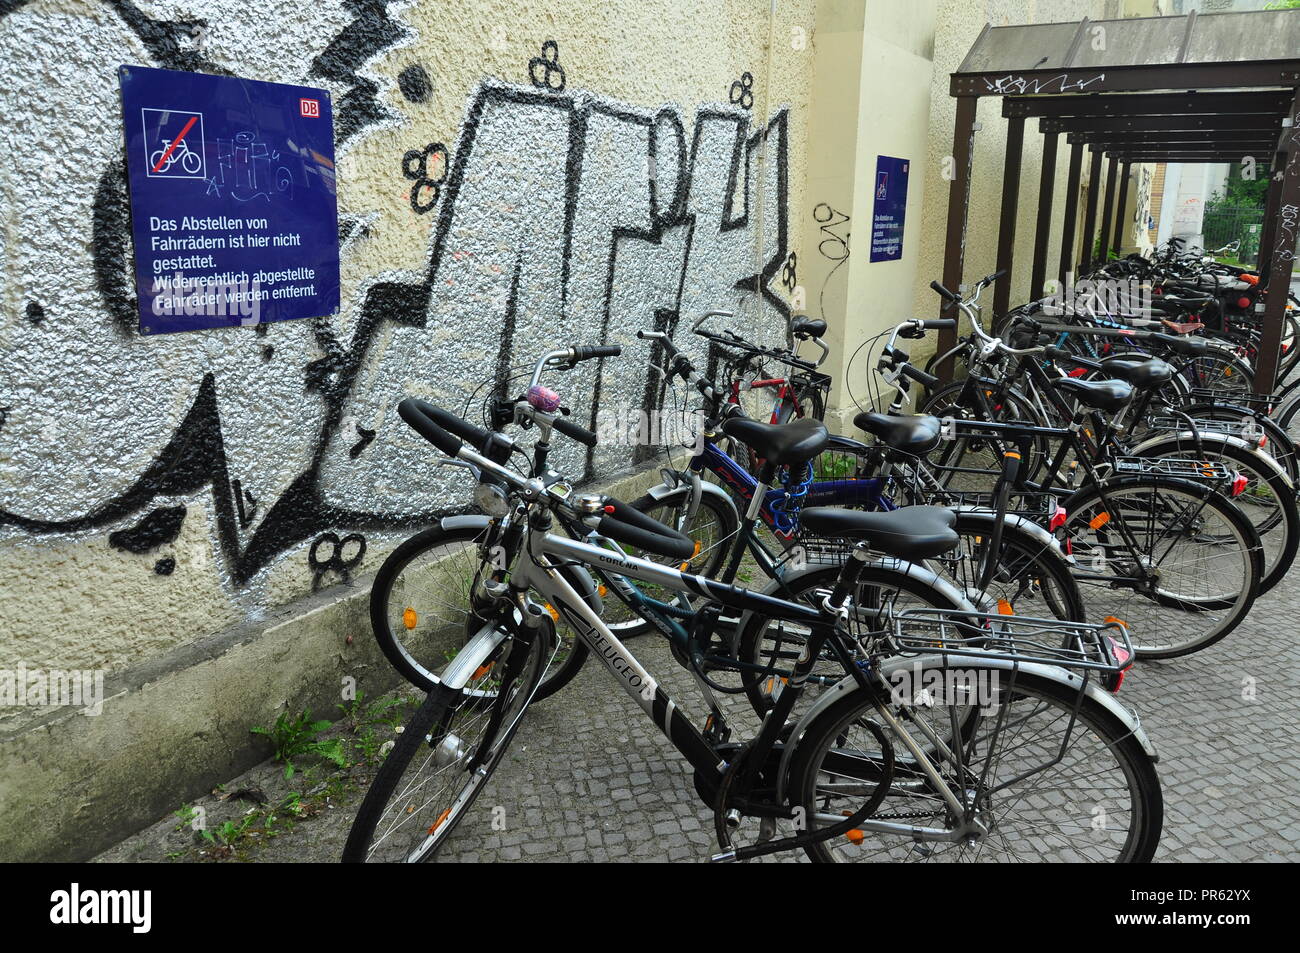 Eine Verletzung der Regeln in Deutschland. Geparkte Bikes in einer verbotenen Zone. Stockfoto